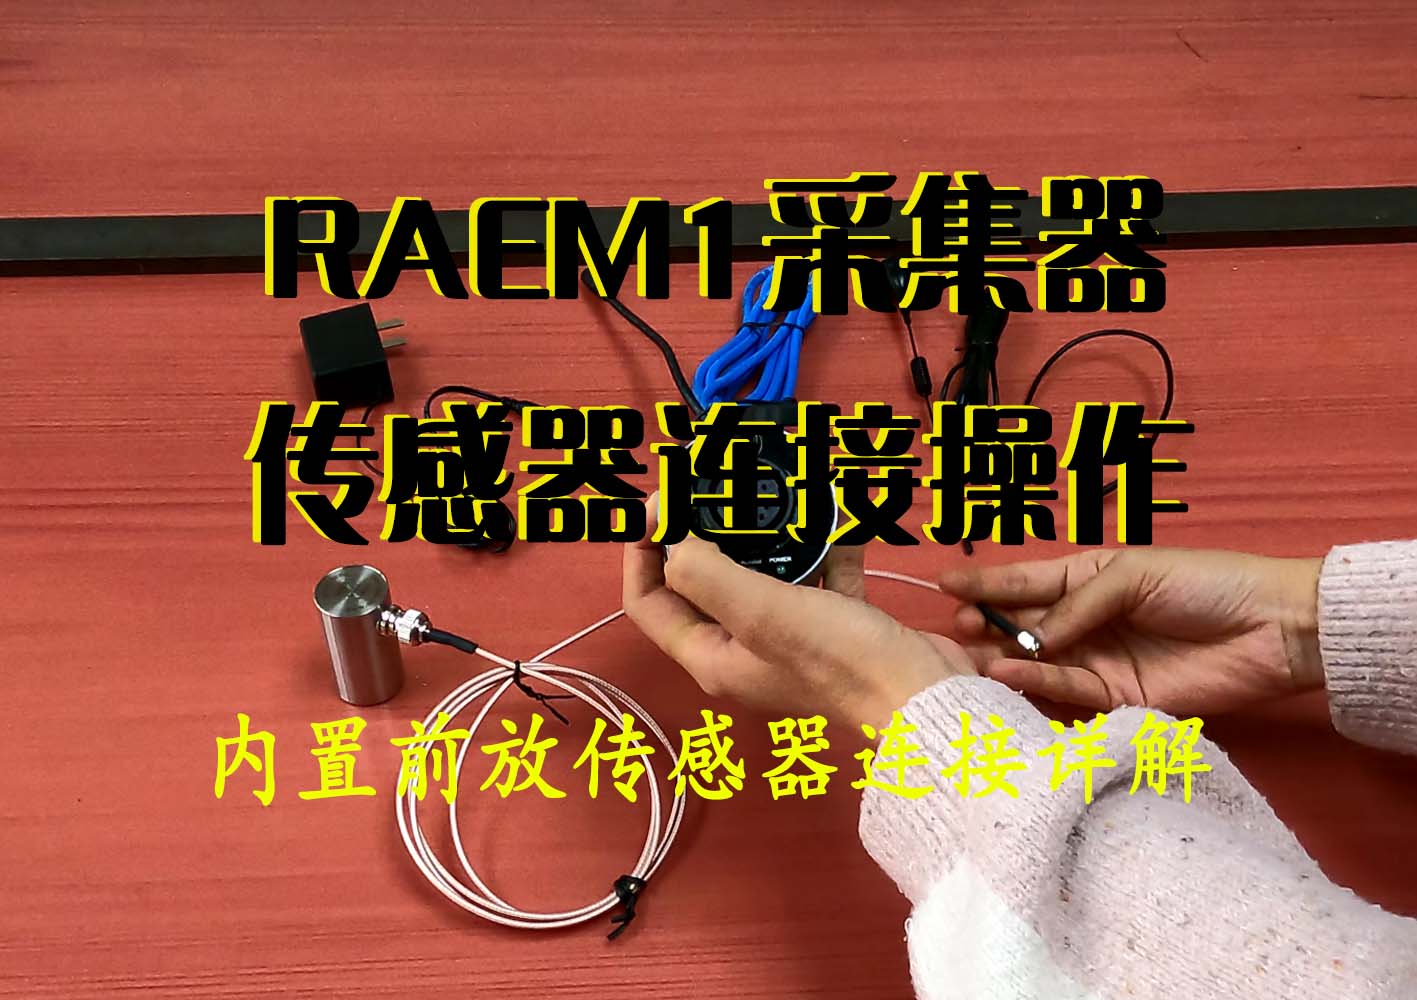 内置前放传感器连接RAEM1